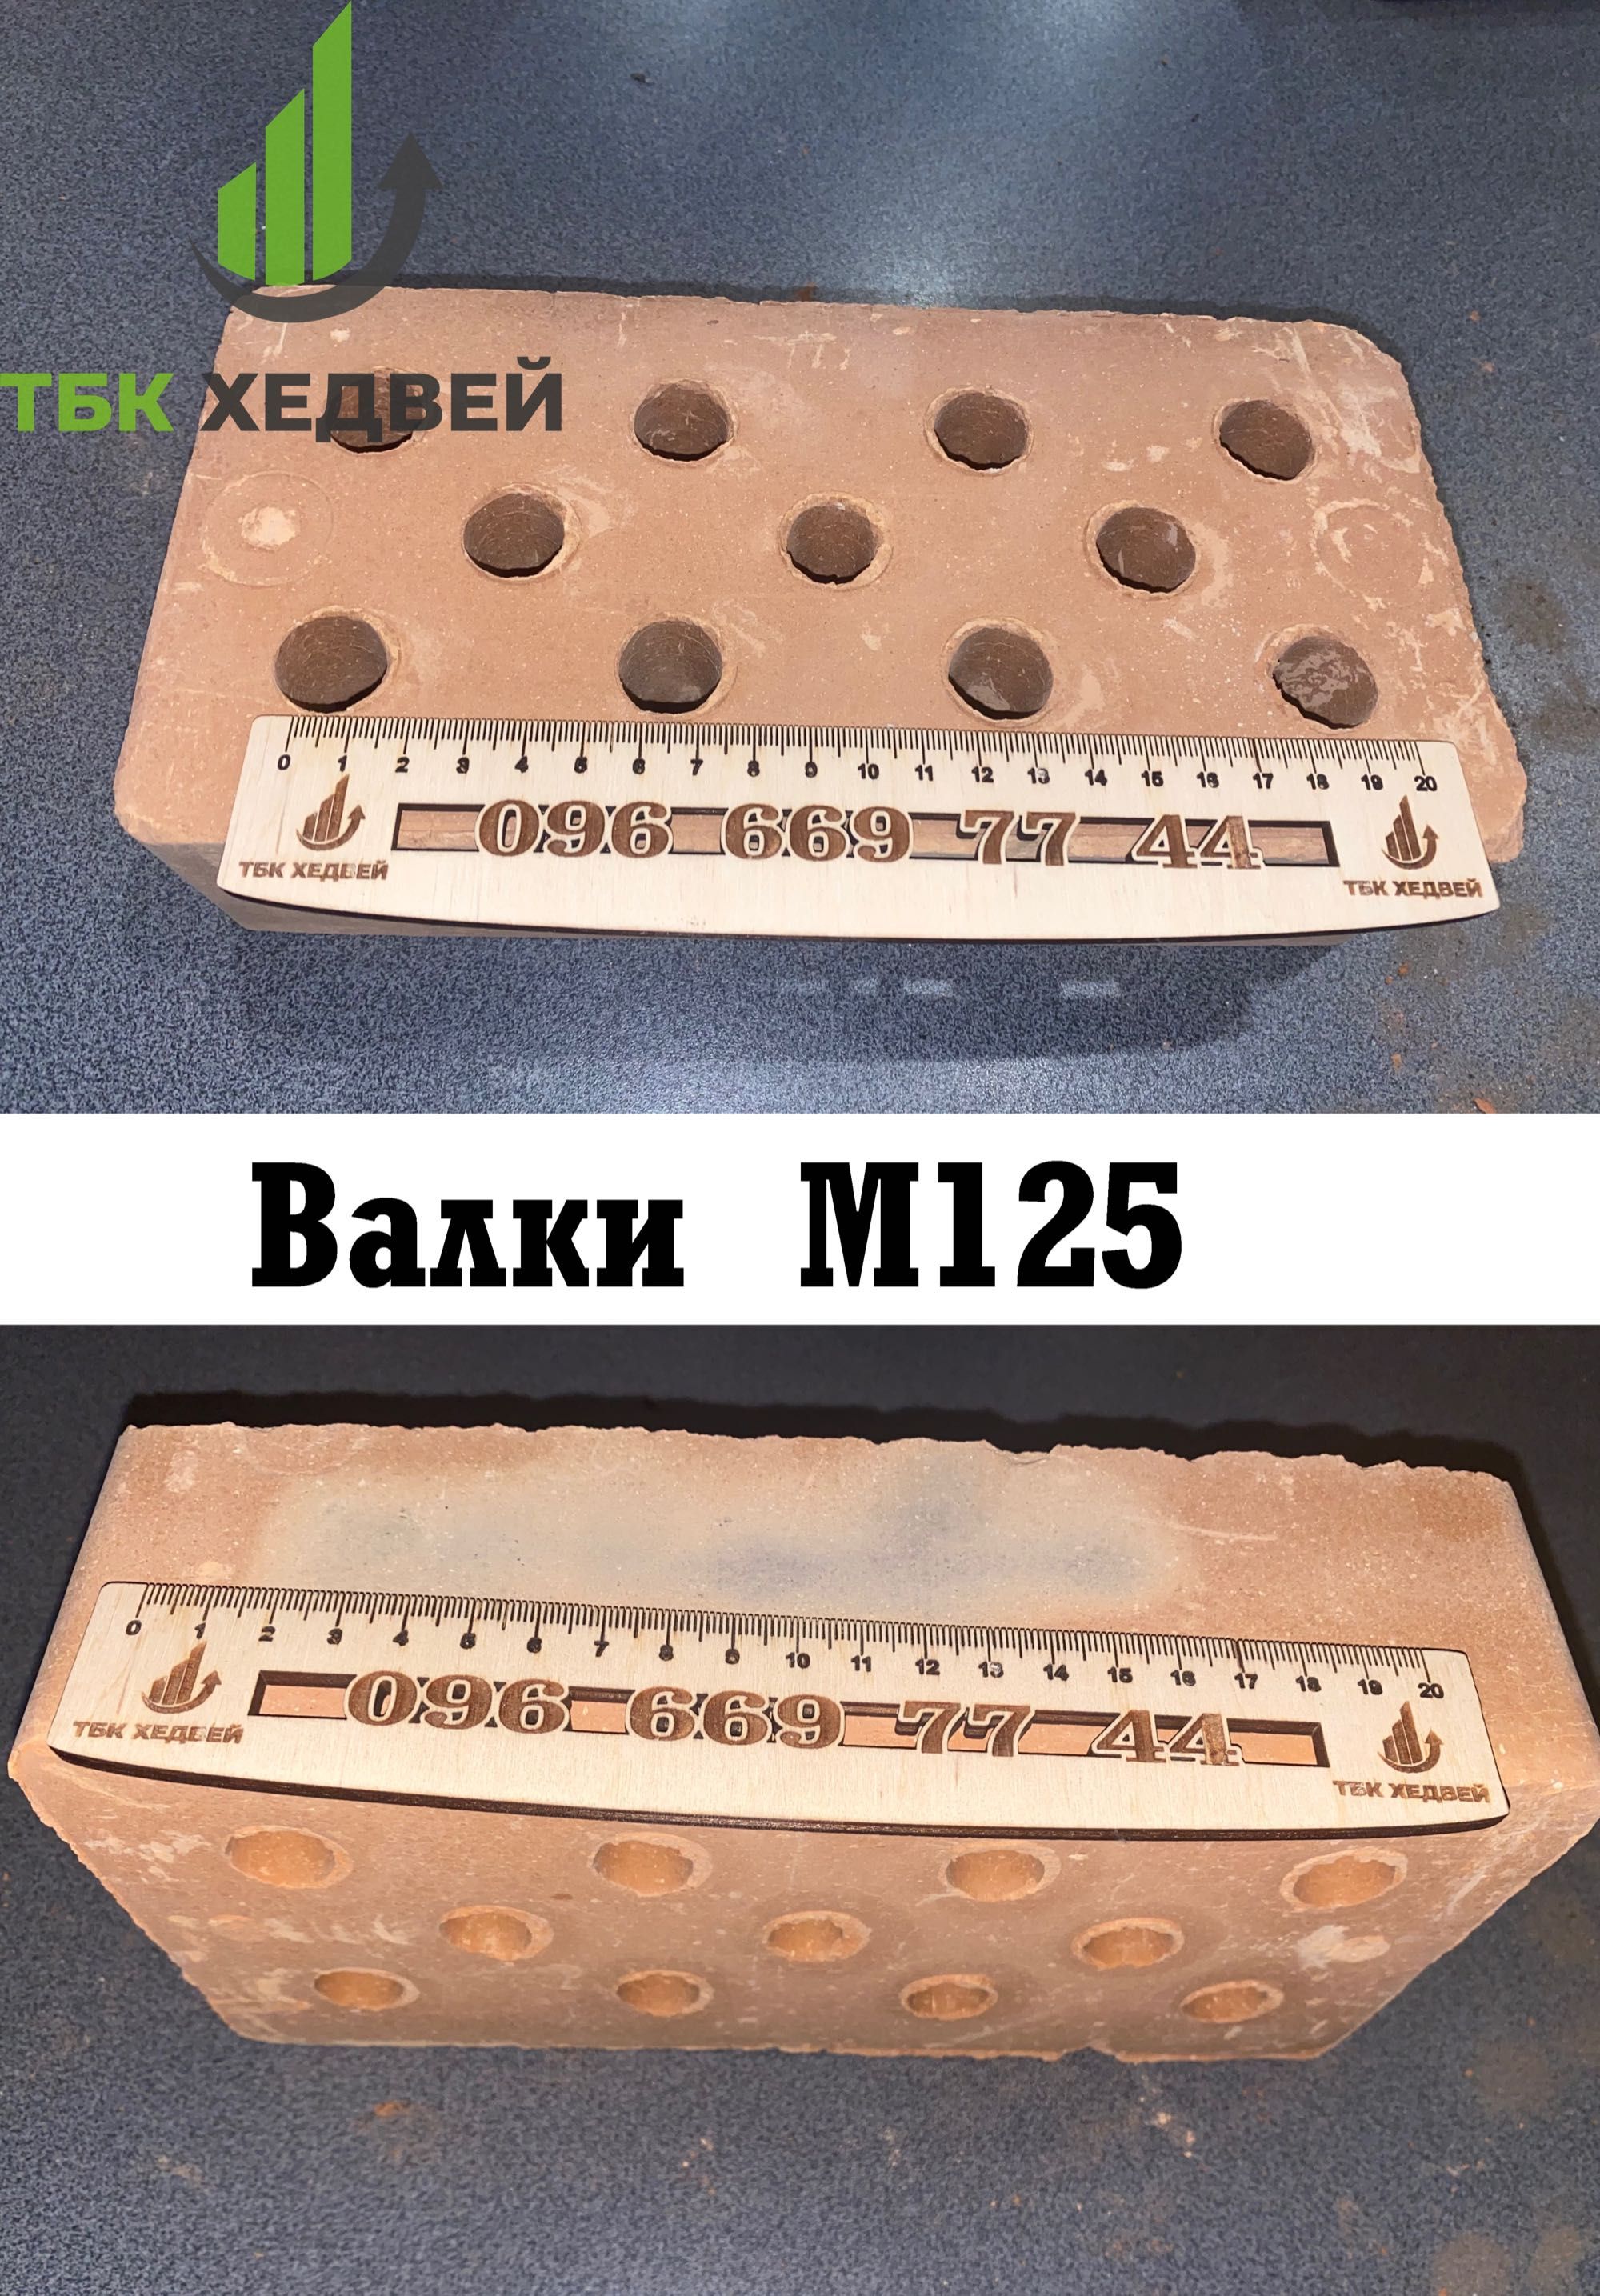 Кирпич Цегла рядова М100 М125 М150 от 5,20грн/шт с доставкой от завода